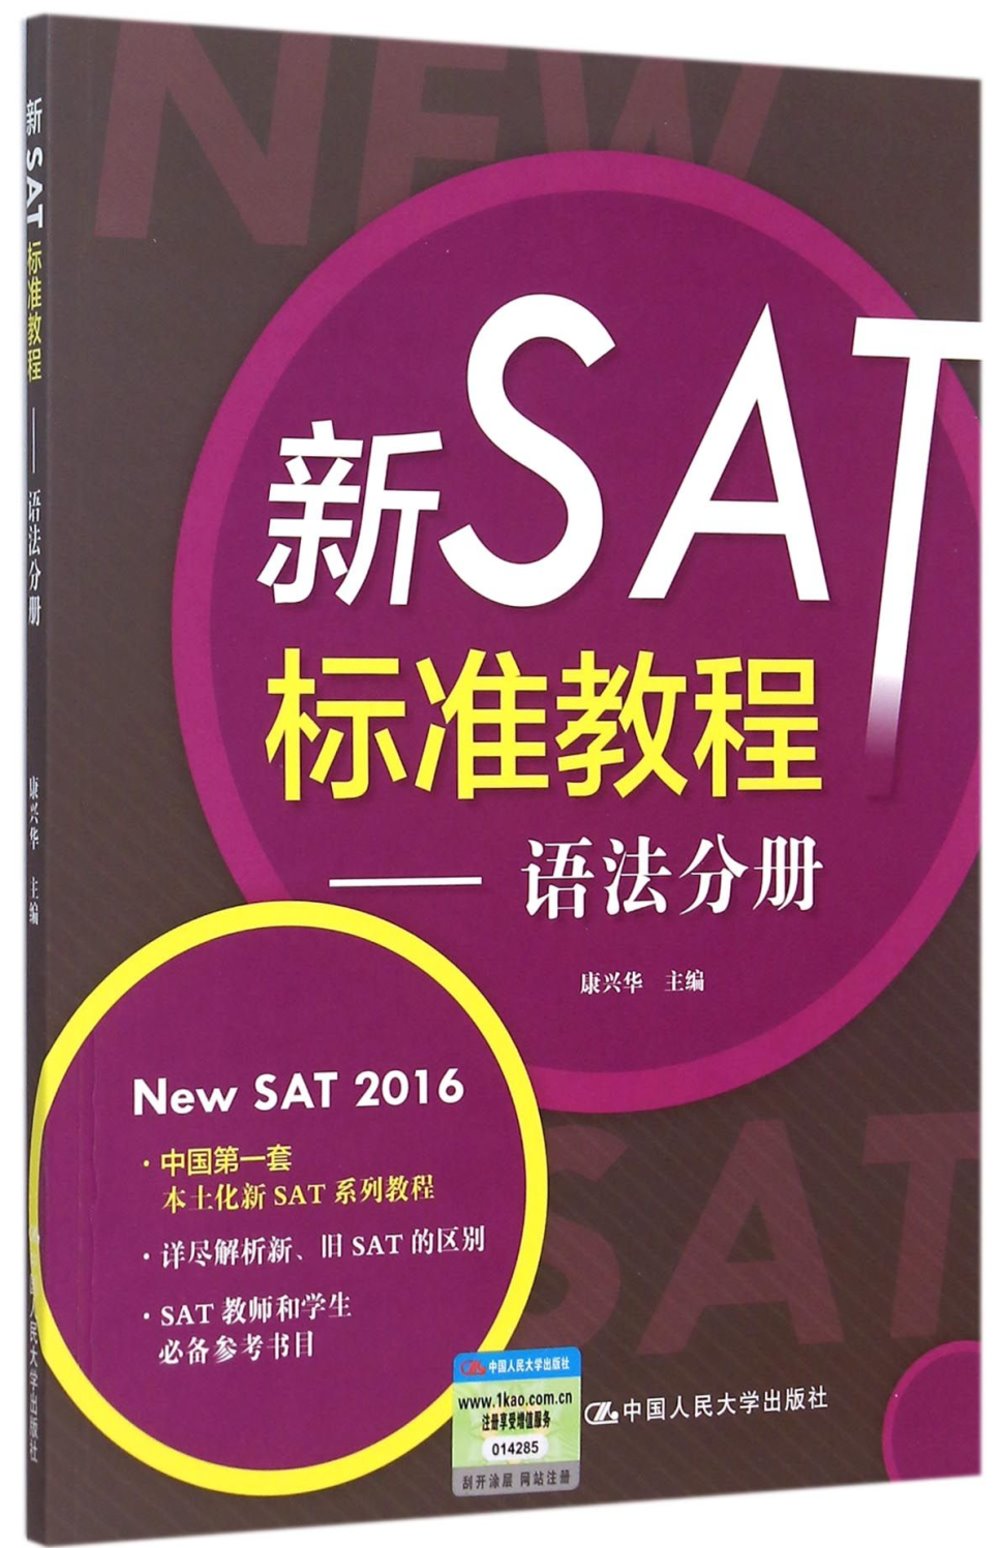 新SAT標准教程——語法分冊